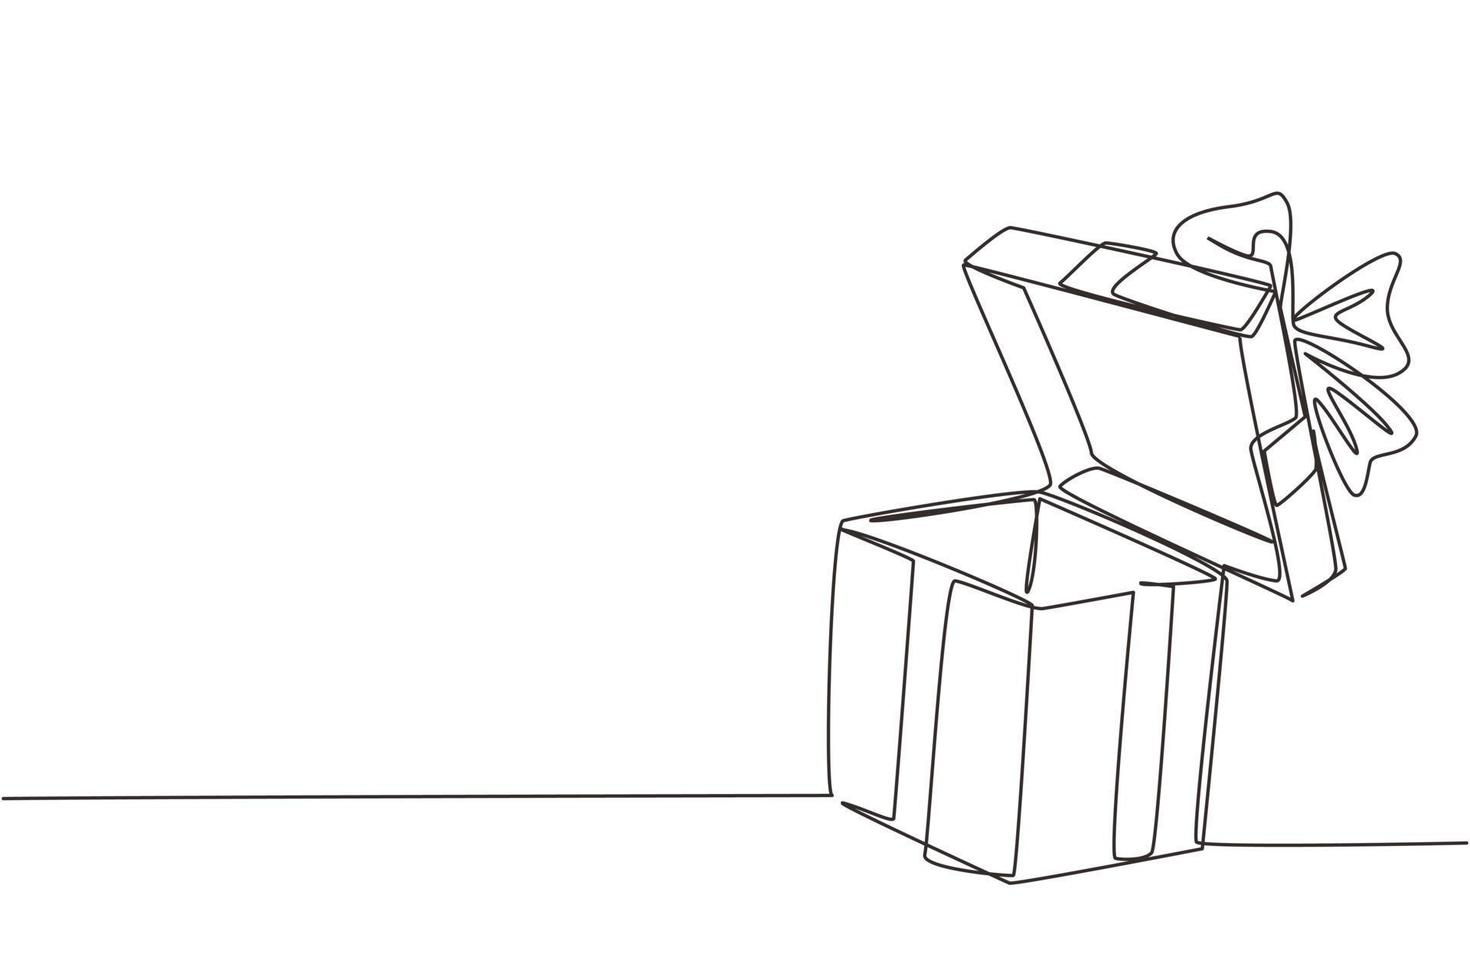 einzelne einstrichzeichnung offene weiße geschenkbox mit band und schleife. Grußgeschenkpaket. dekoratives Geschenk oder Karton mit Schleife. moderne grafische vektorillustration des ununterbrochenen zeichnendesigns vektor